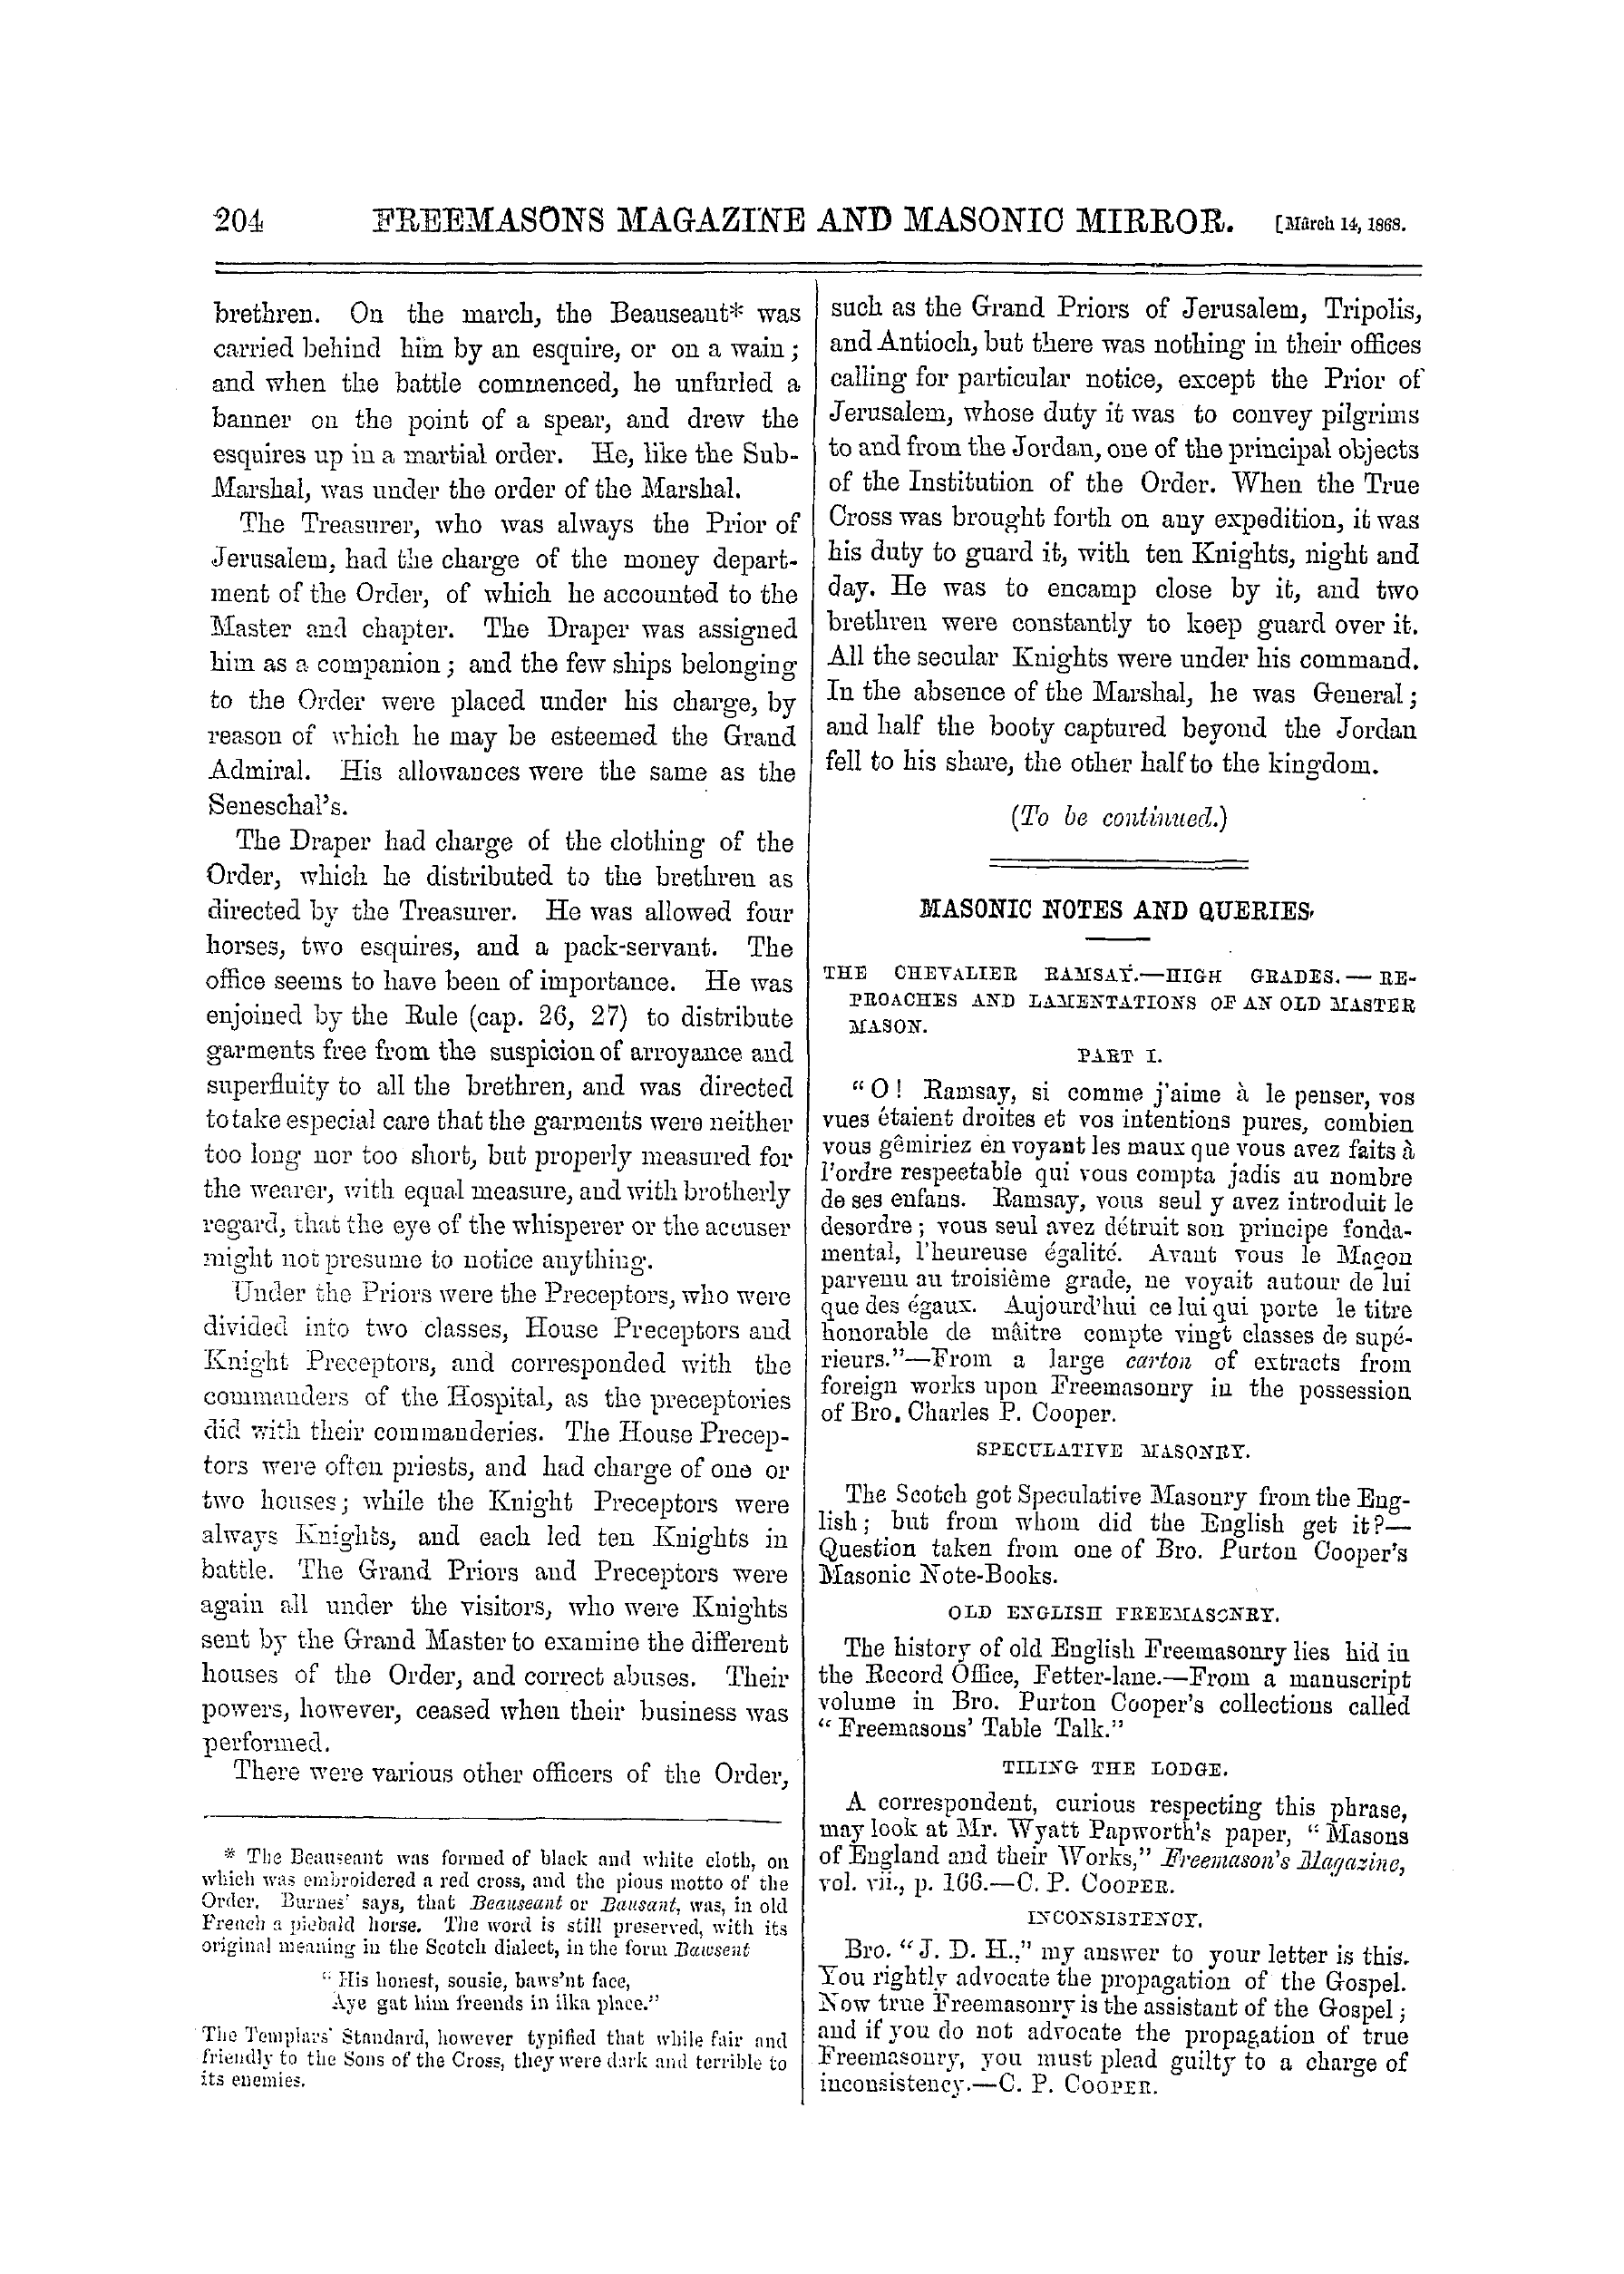 The Freemasons' Monthly Magazine: 1868-03-14: 4